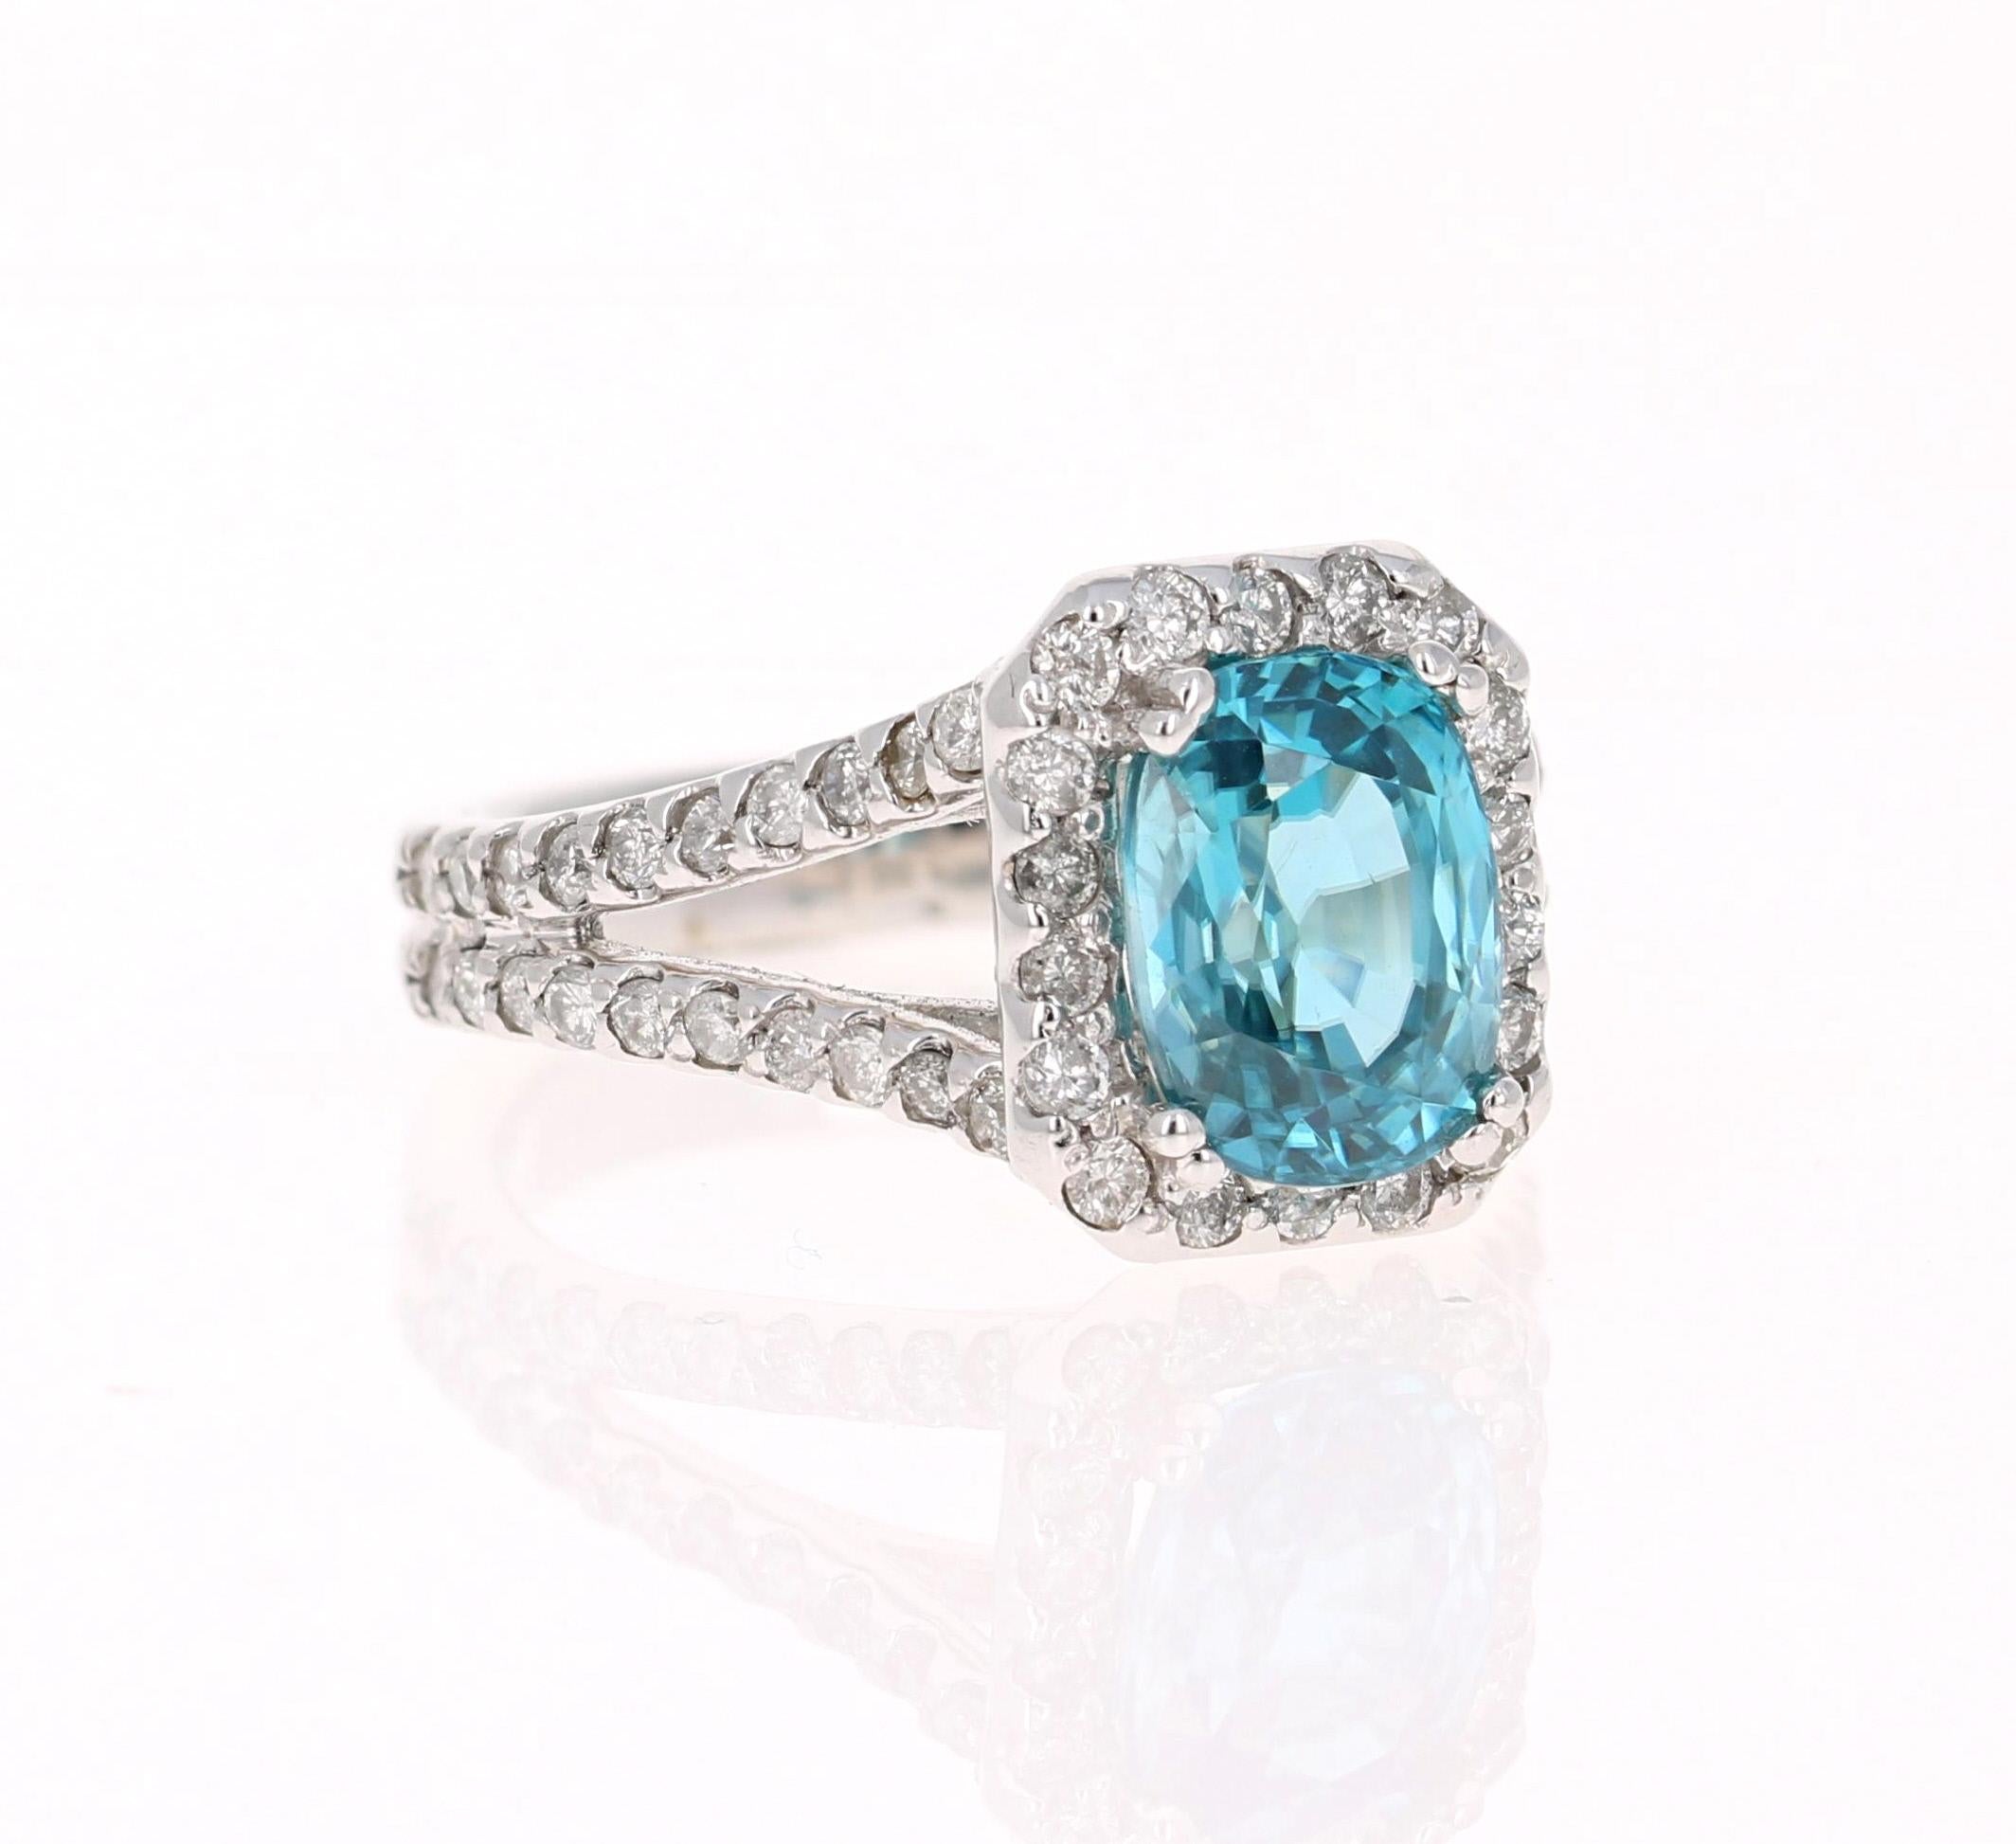 Ein schillernder Ring aus blauem Zirkon und Diamant! Blauer Zirkon ist ein Naturstein, der in verschiedenen Teilen der Welt abgebaut wird, vor allem in Sri Lanka, Myanmar und Australien. 

Dieser blaue Zirkon hat 4,00 Karat und ist von einem Halo